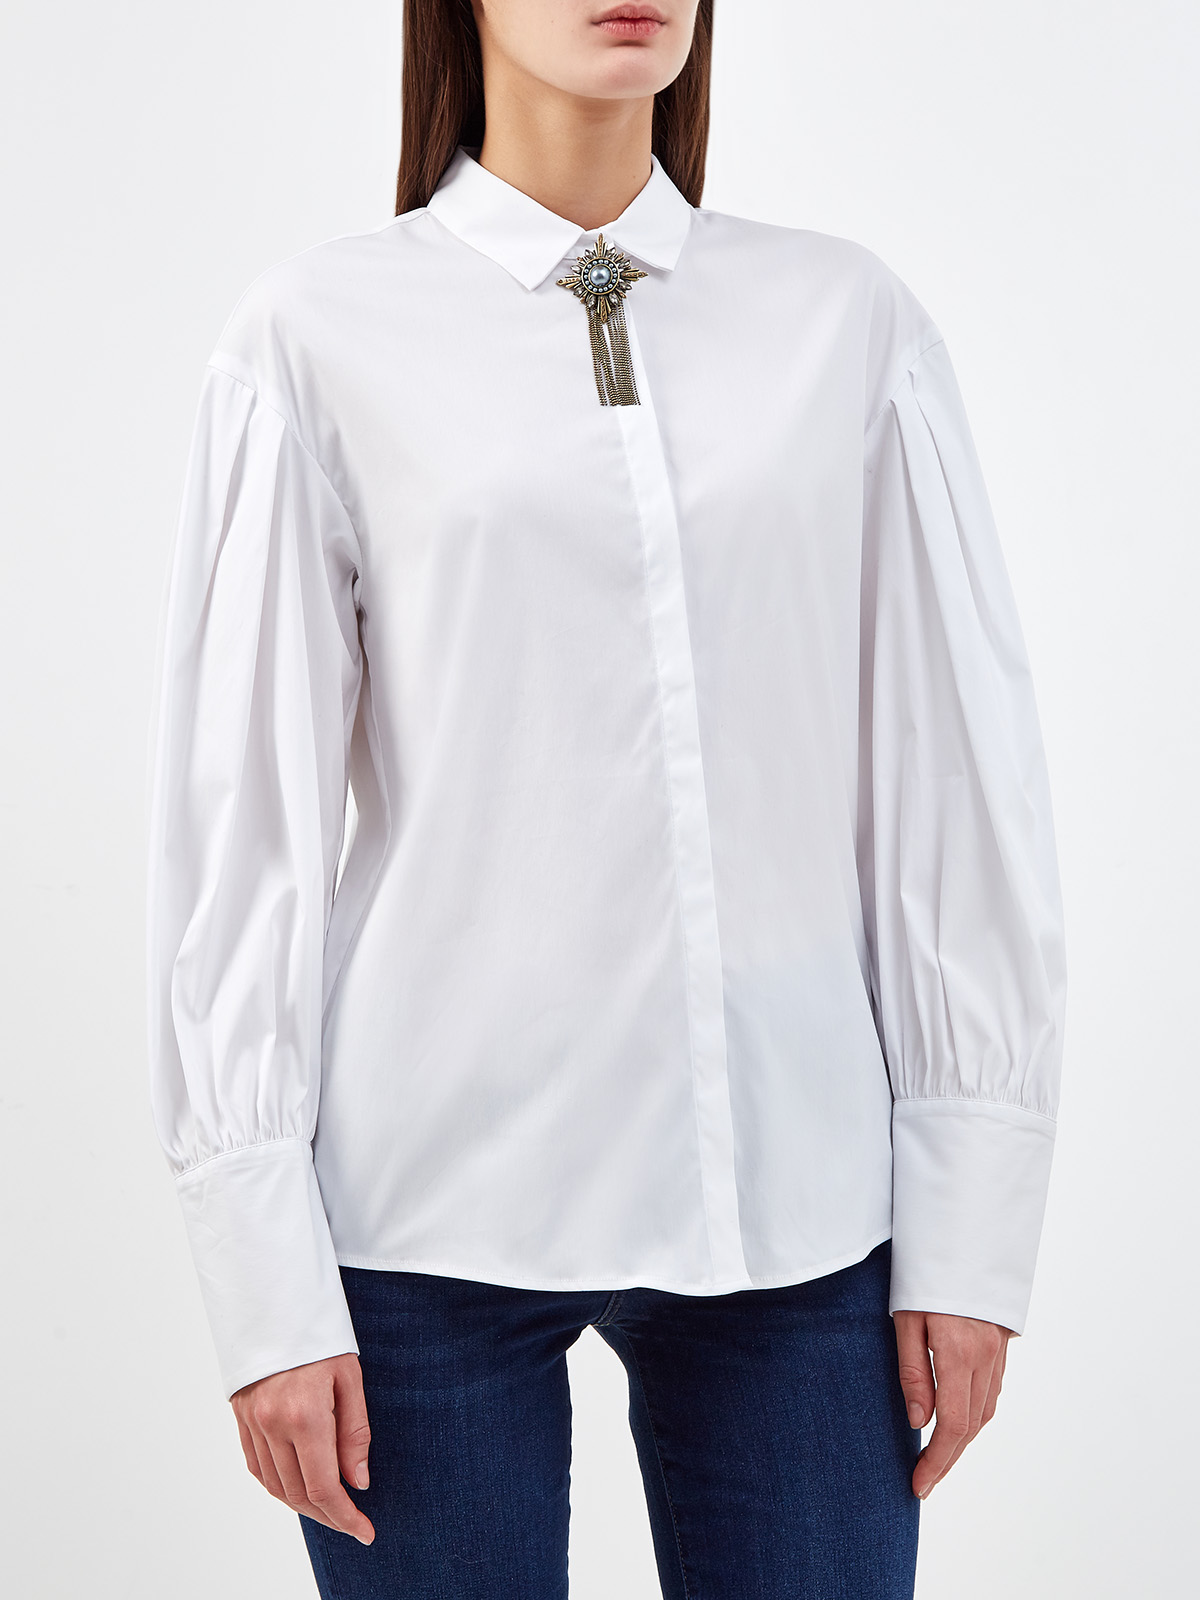 Рубашка с объемными рукавами и ювелирной брошью FABIANA FILIPPI, цвет белый, размер 42;44 - фото 3